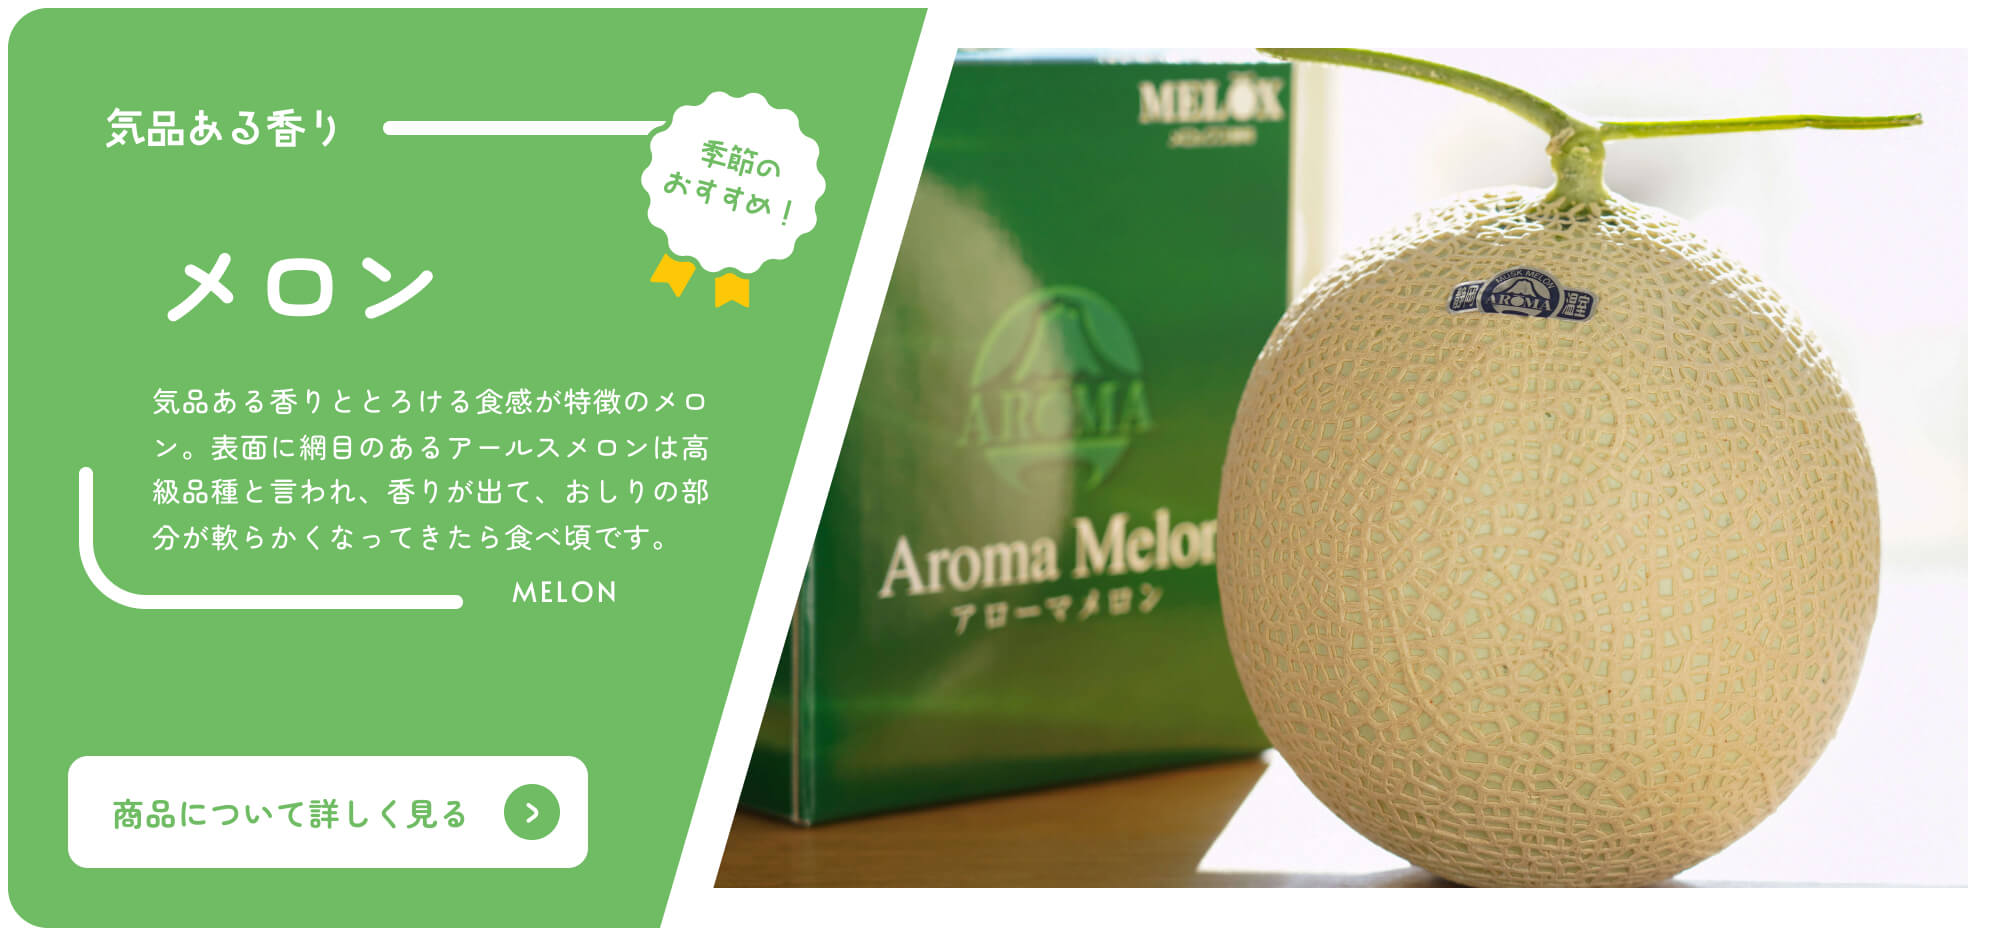 Buy Shizuoka Online Catalog Seasonal Recommended Melon